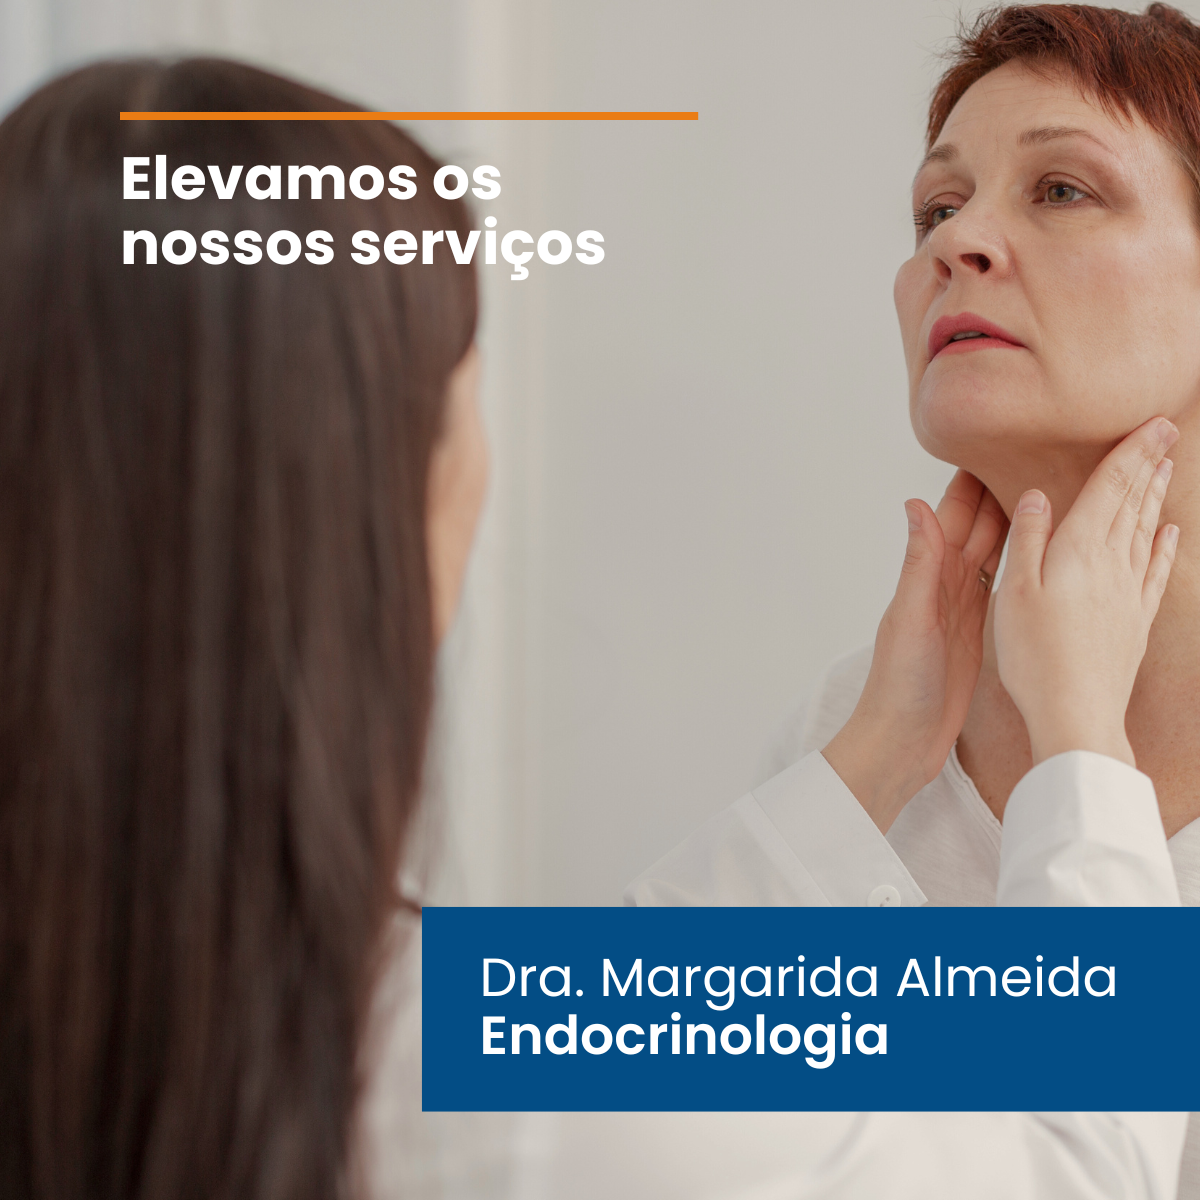 Dra. Margarida Almeida, Endocrinologista